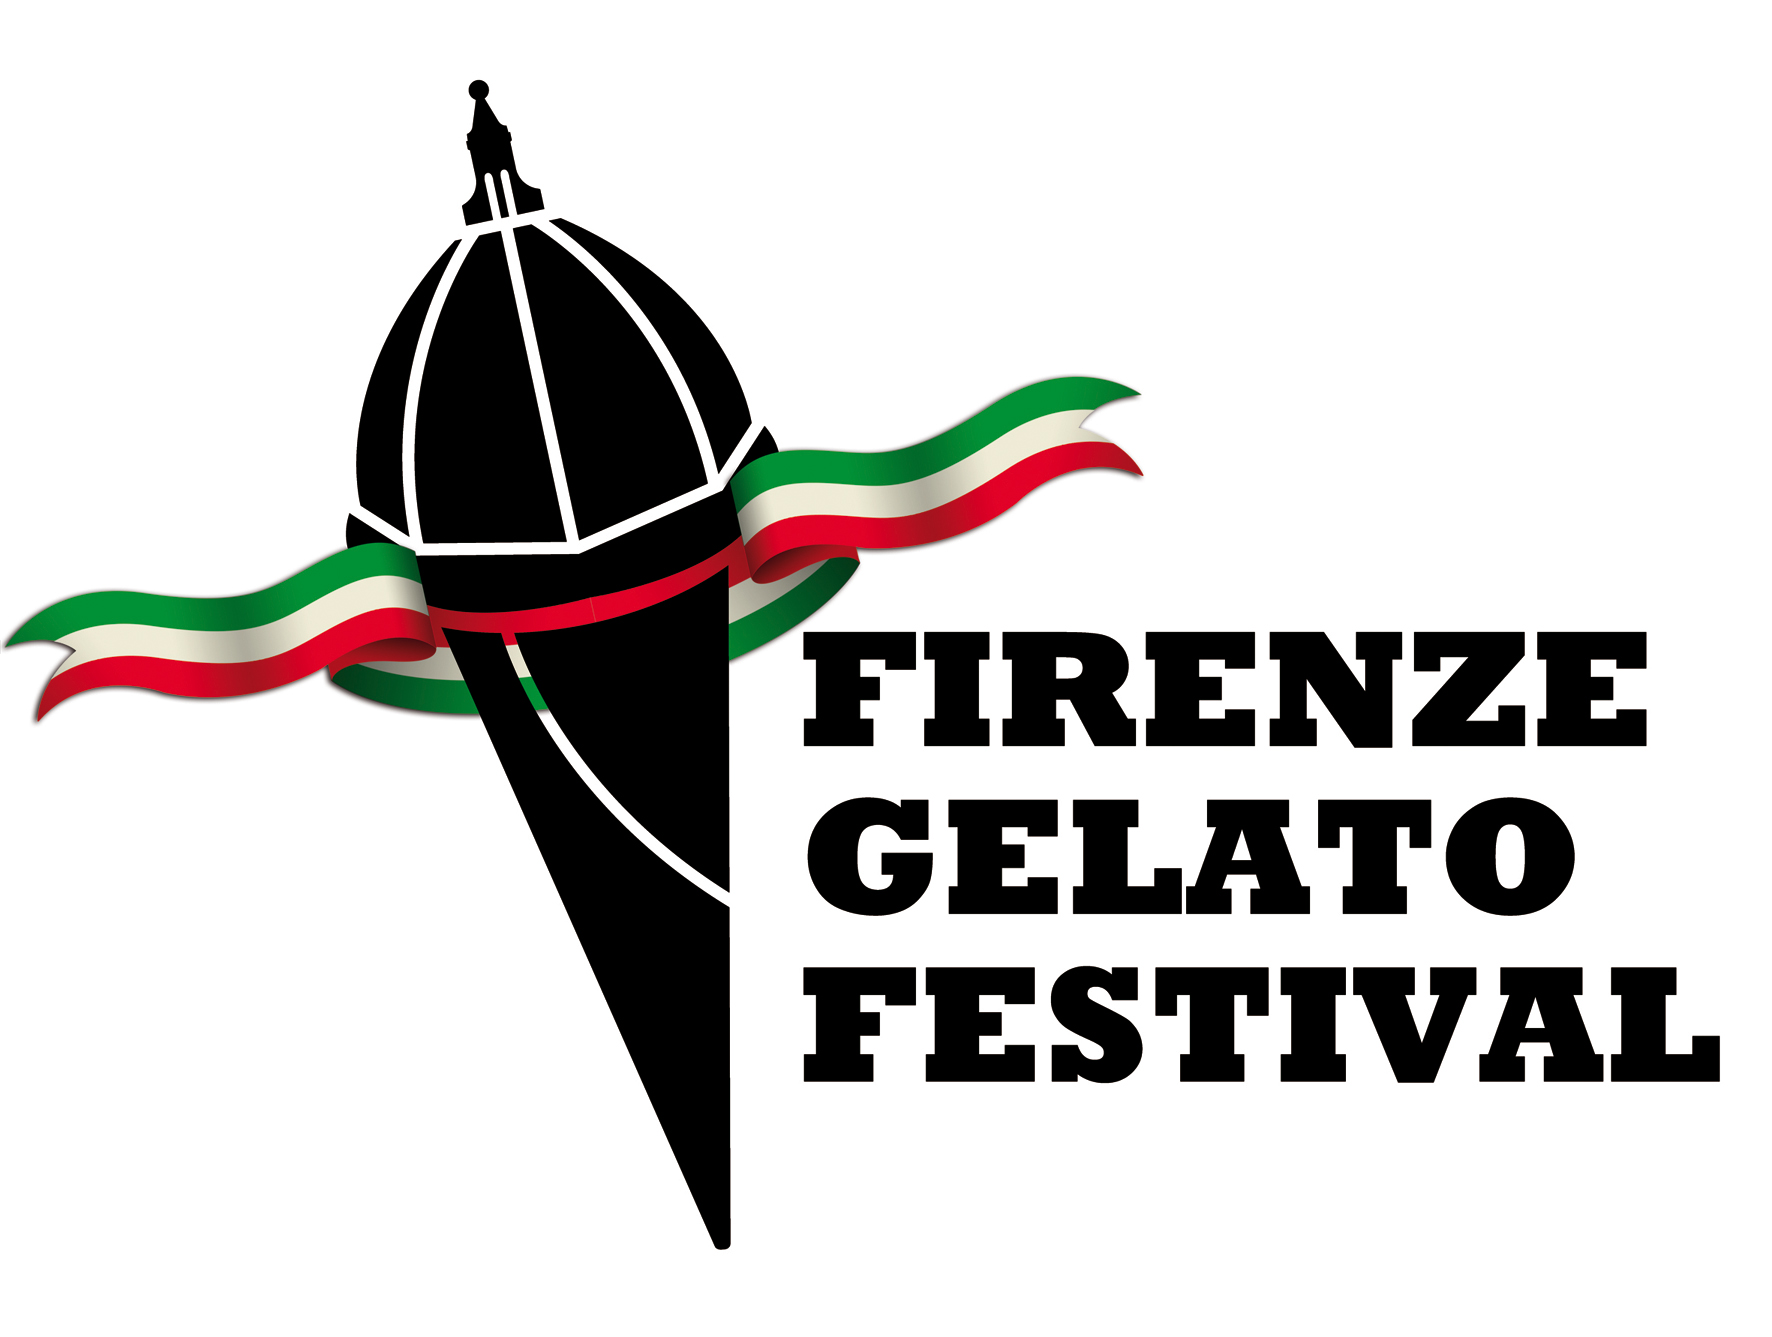 Firenze Gelato Festival dal 25 al 29 maggio 2011